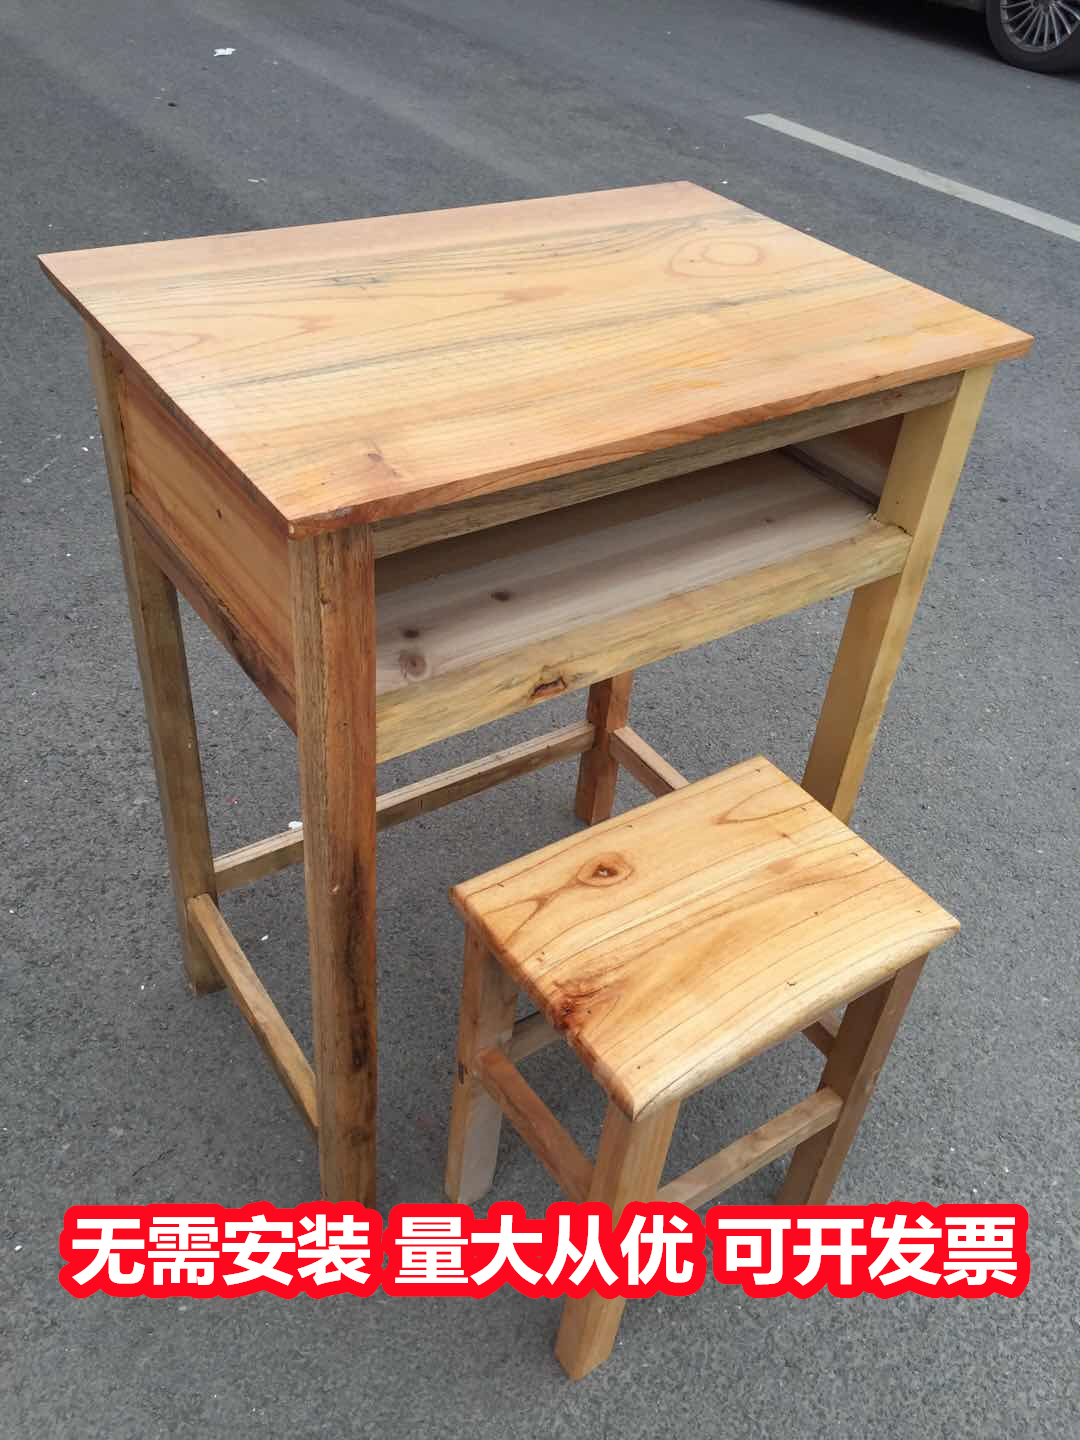 批发供应柳州柳江小学生课桌椅,实木课桌椅批发